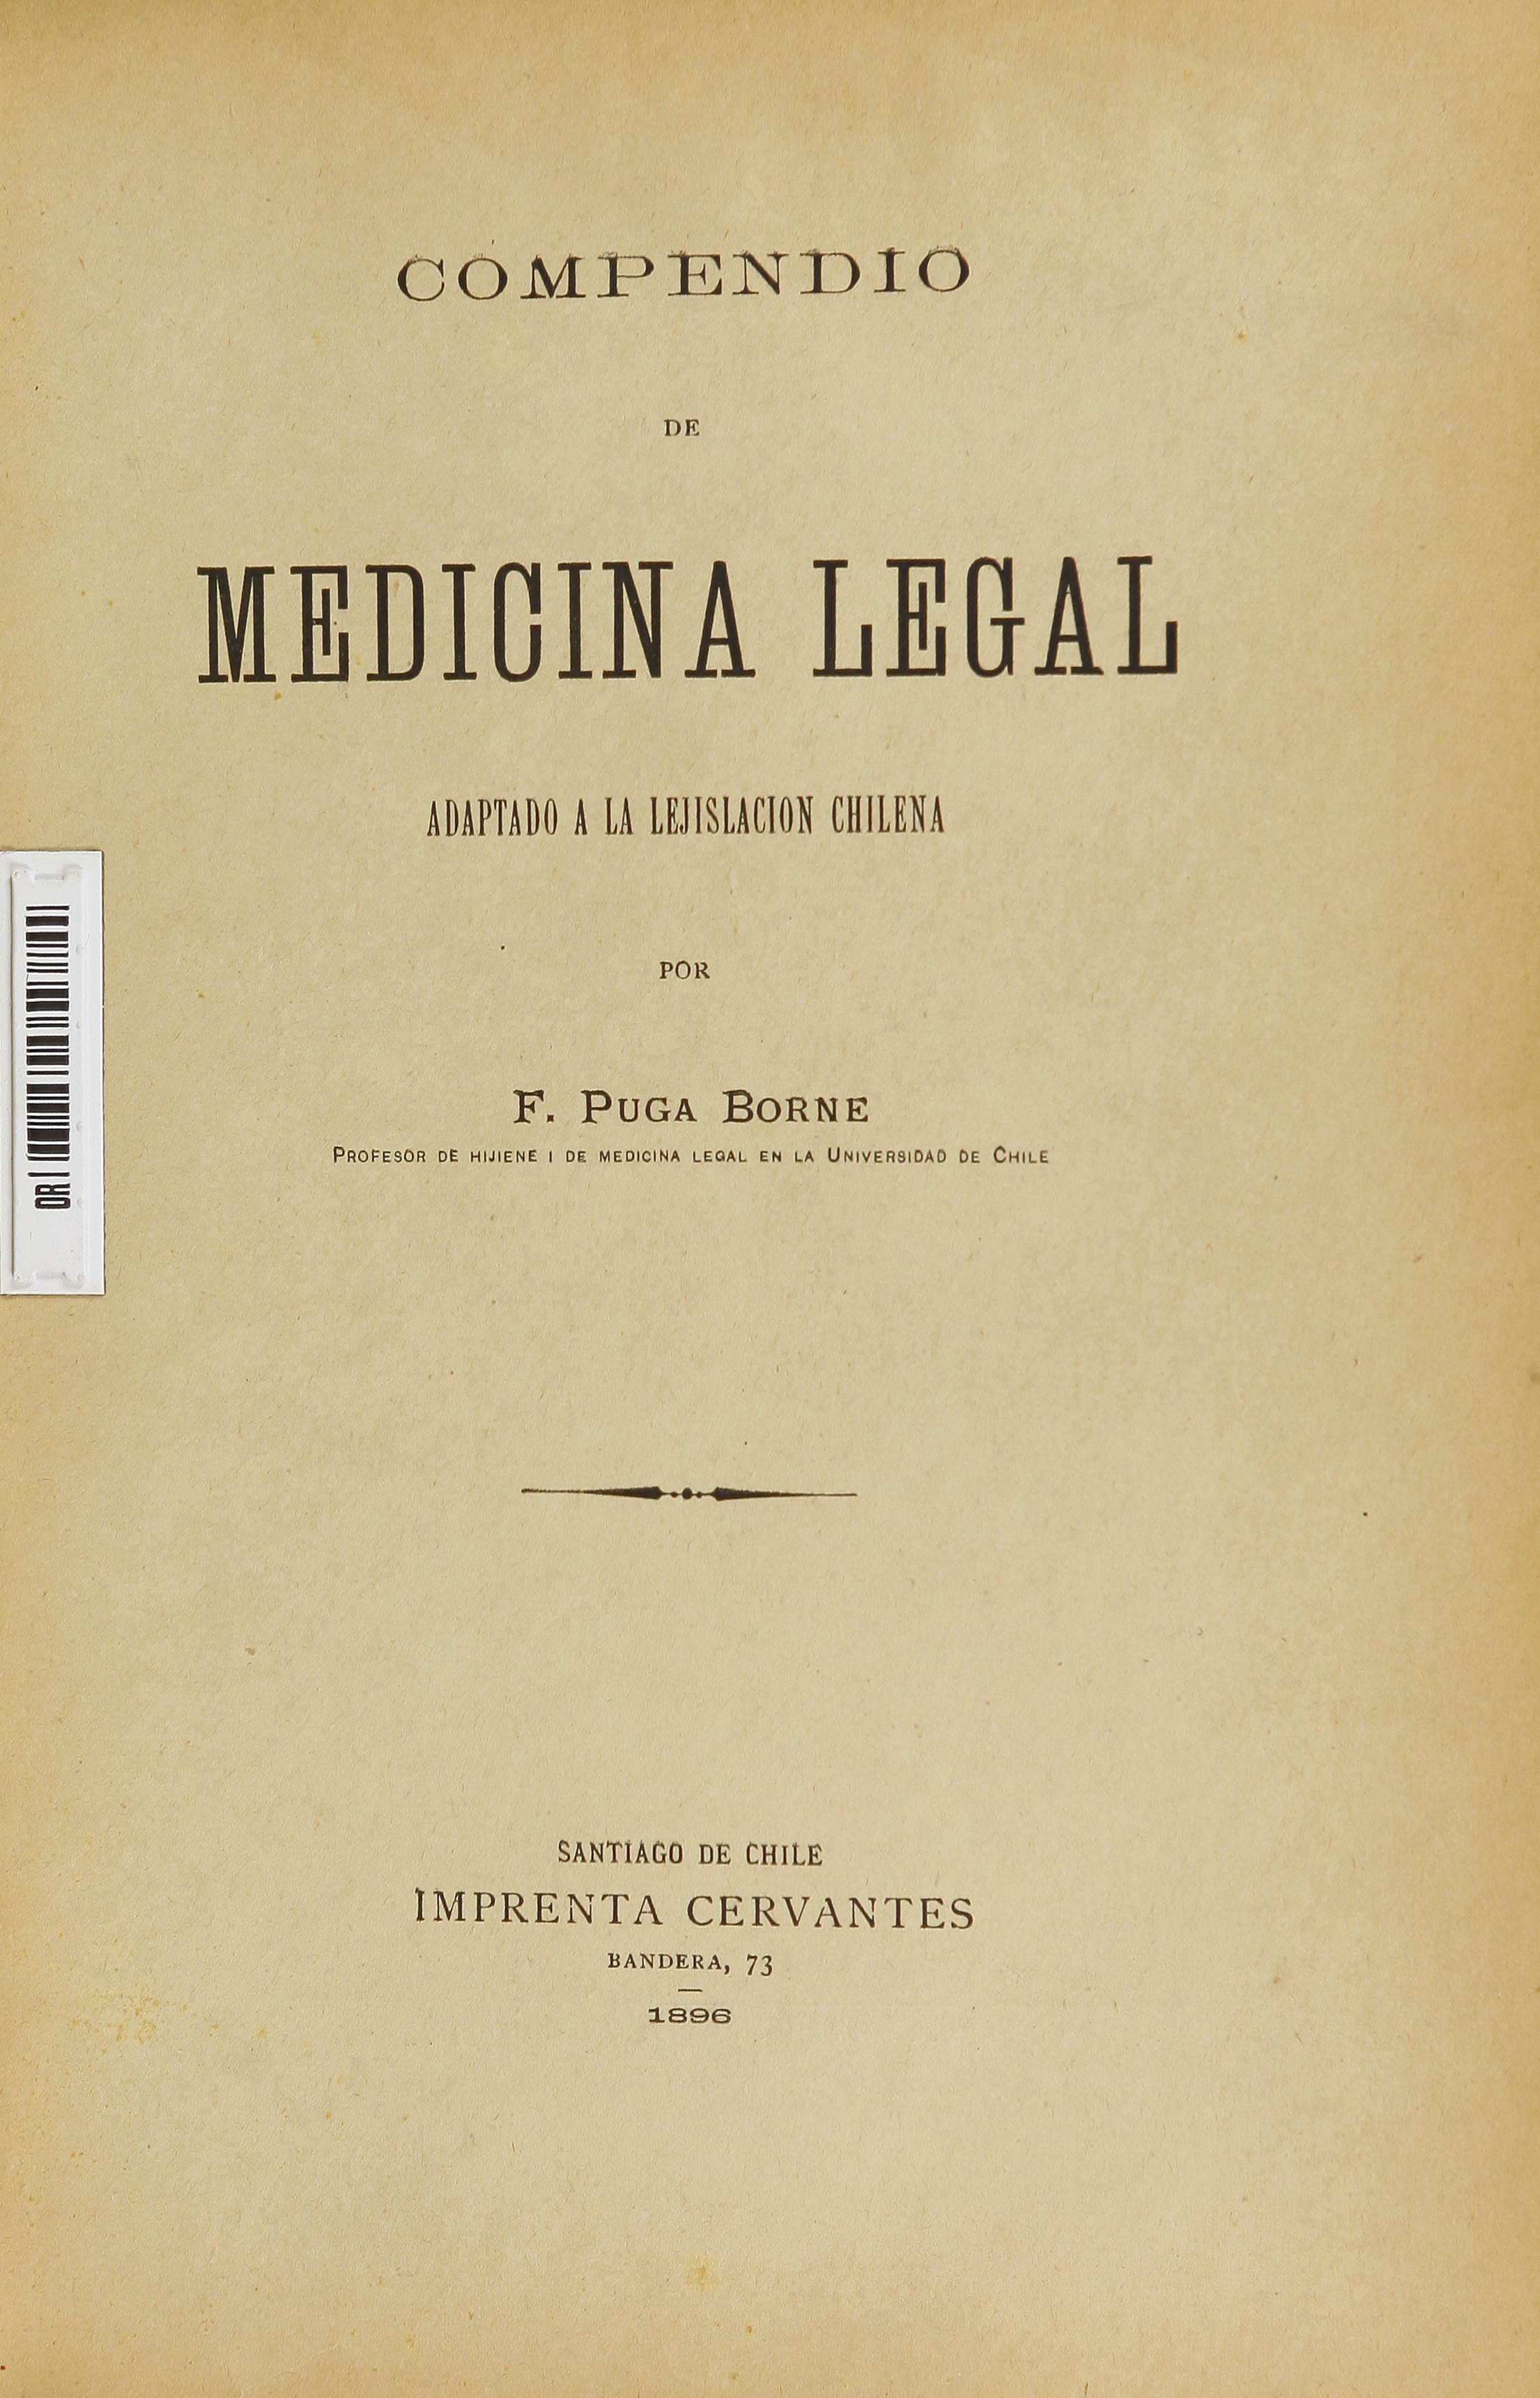 Compendio de medicina legal : adaptado a la lejislación chilena, vol. 2